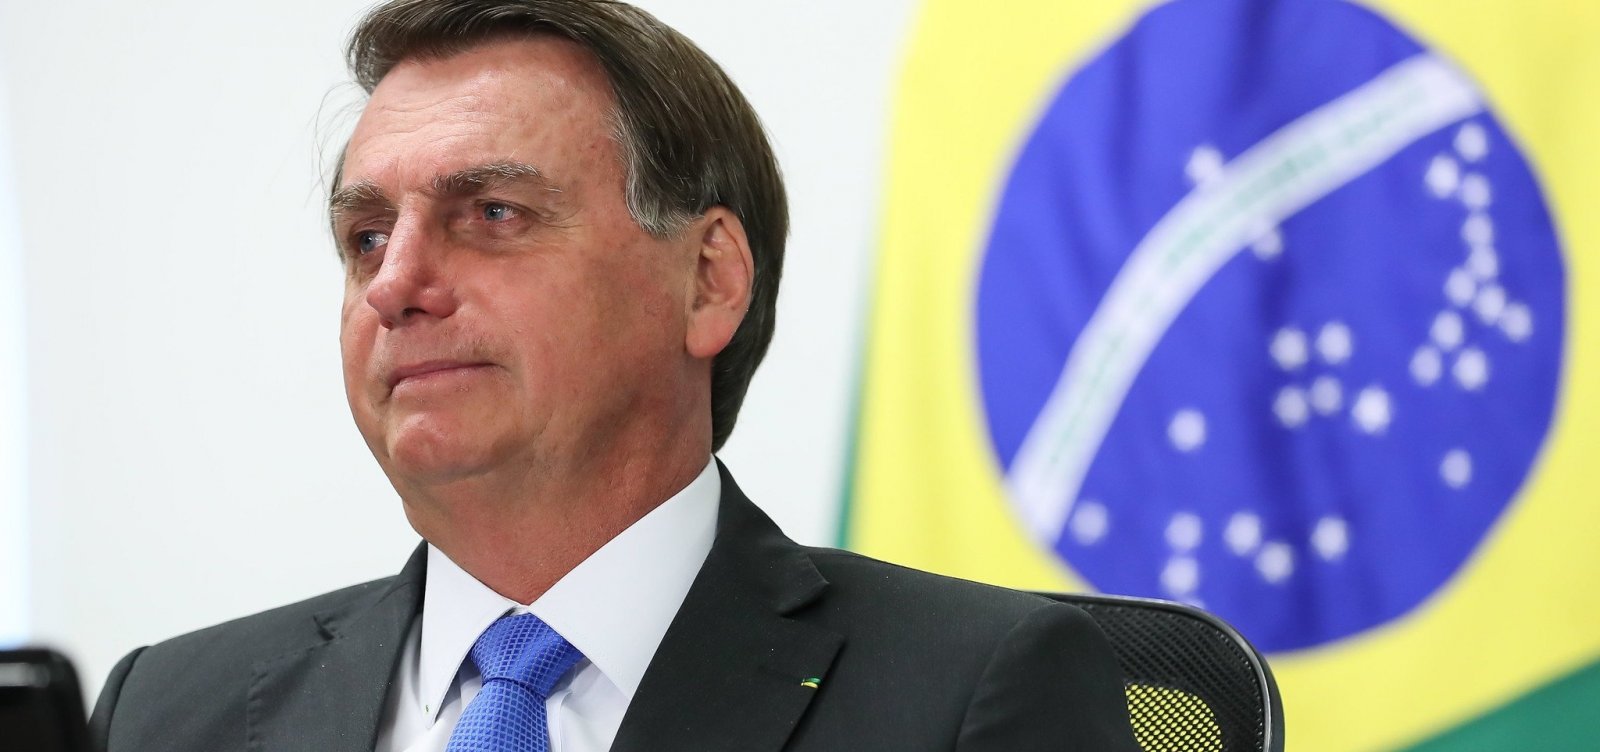 Após 'debandada' na Economia, Bolsonaro defende privatizações e teto de gastos